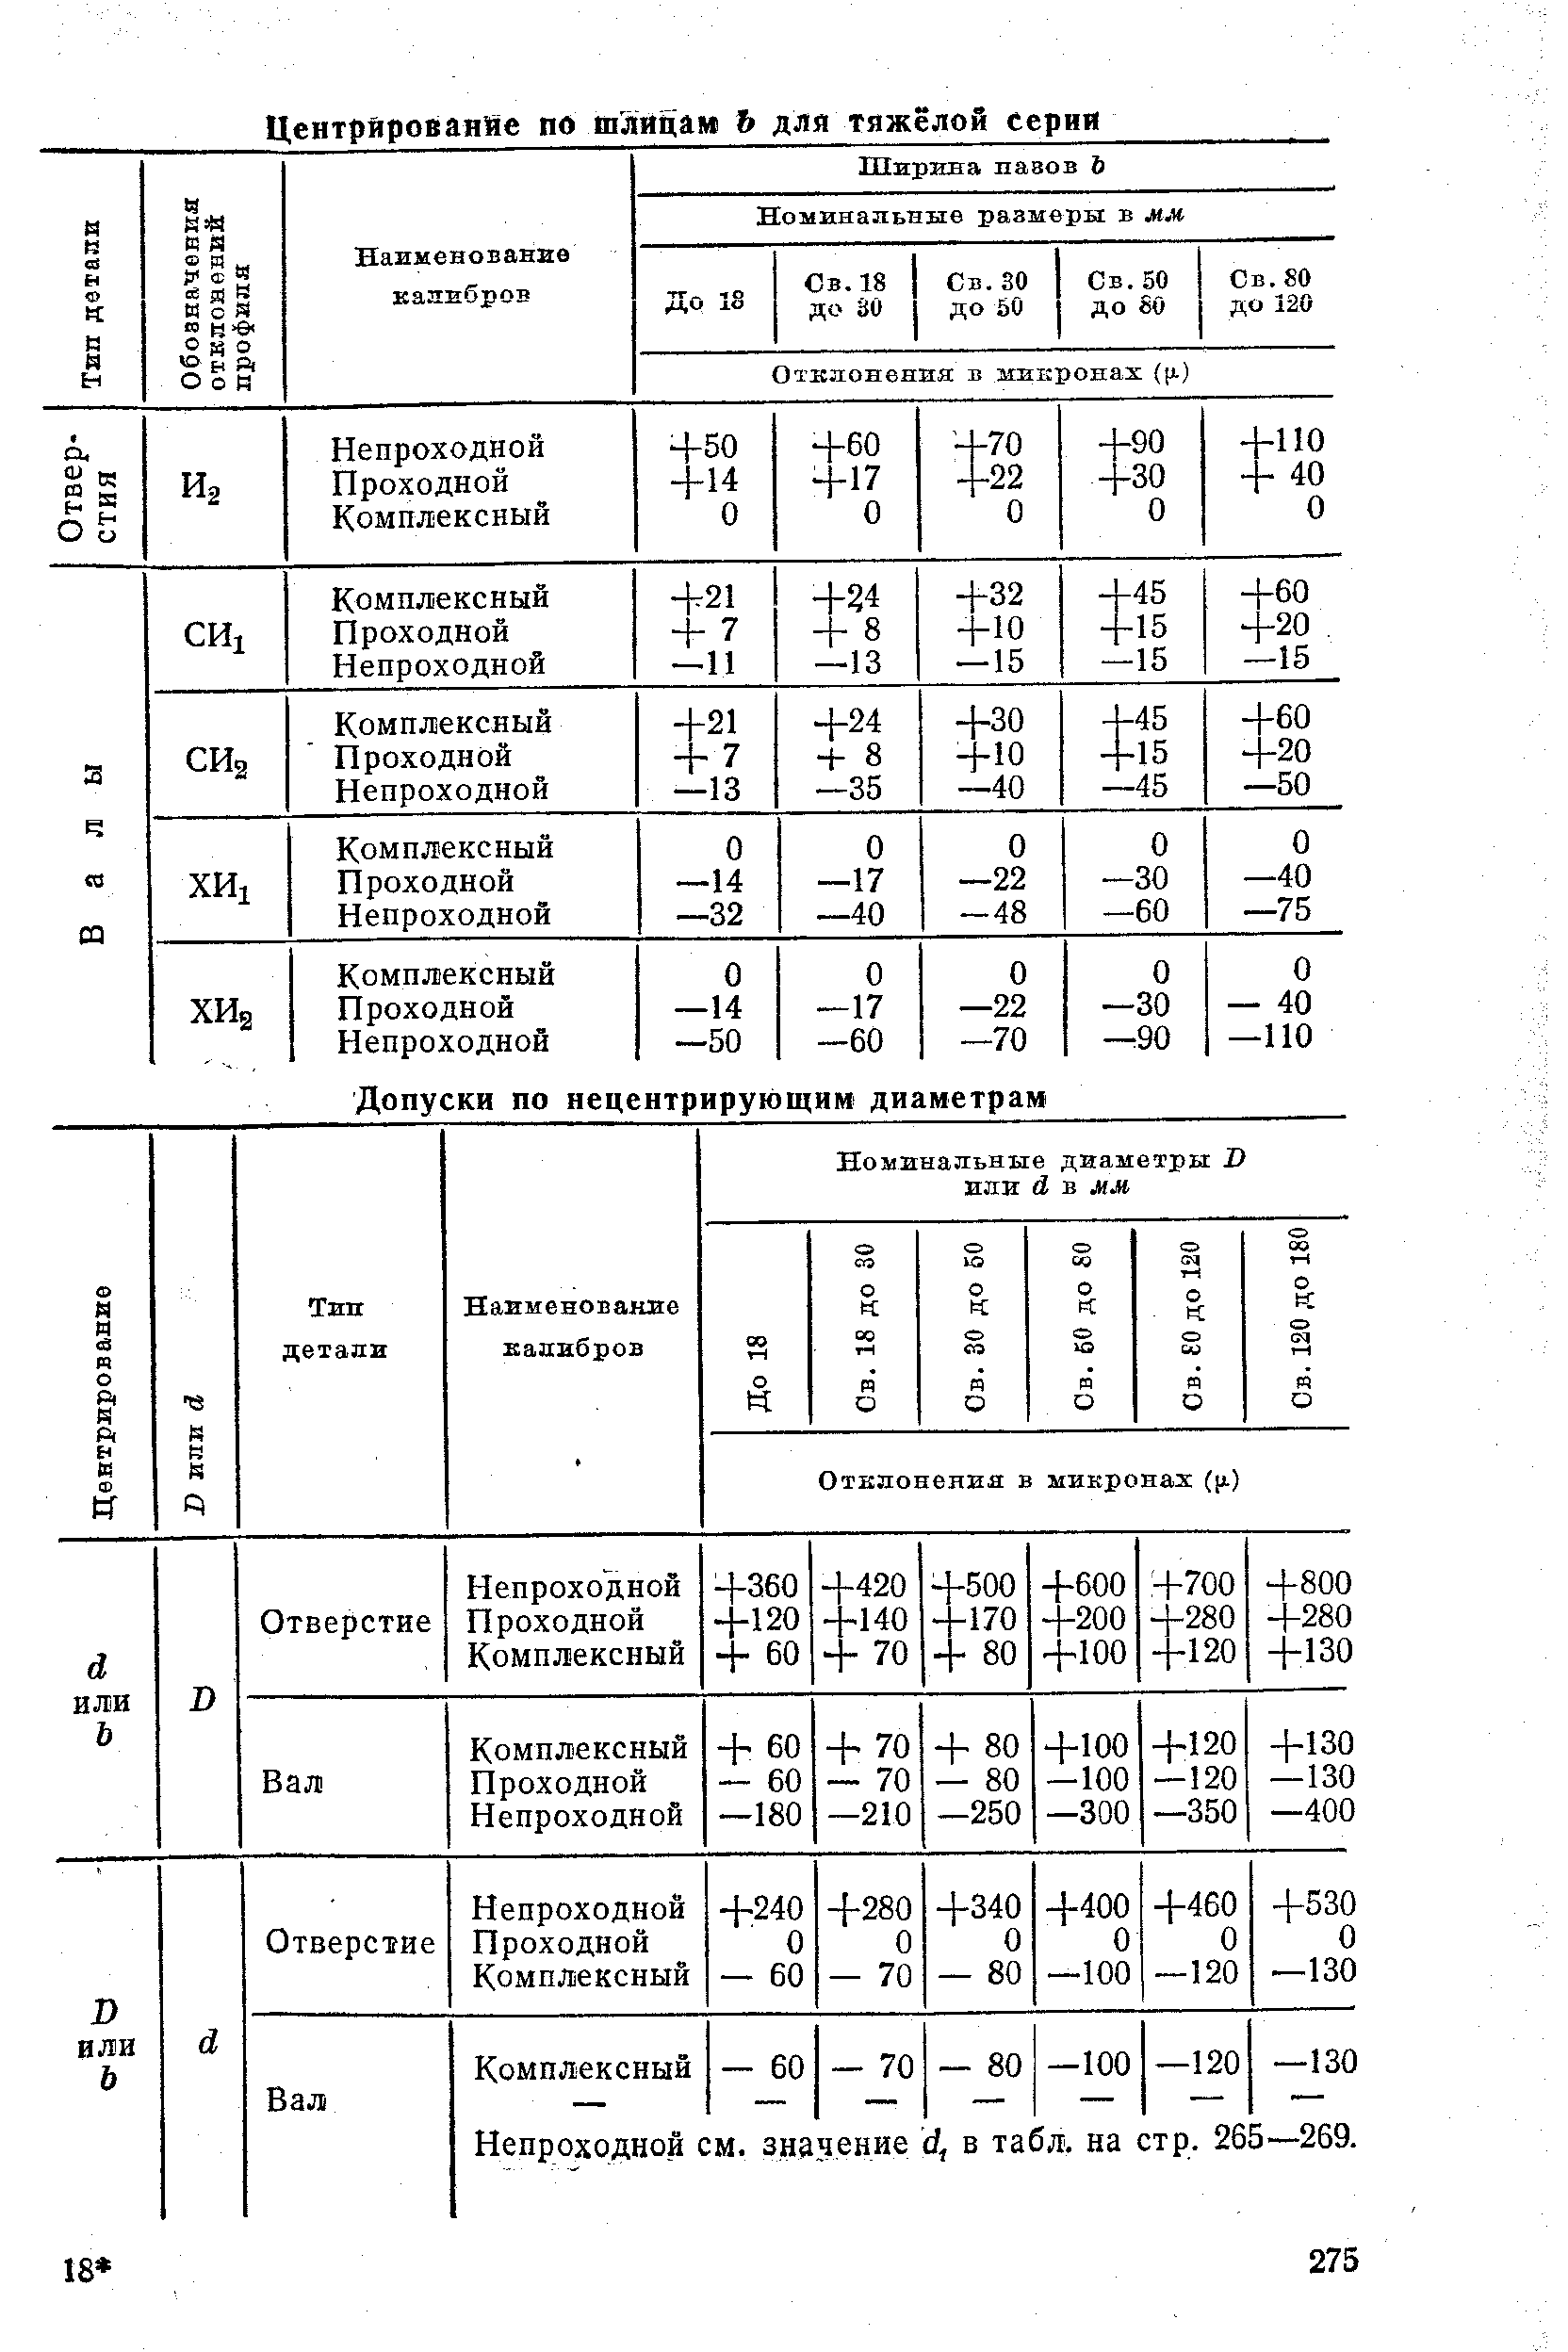 Непроходной см. значение У, в табл. на стр. 265—269.
